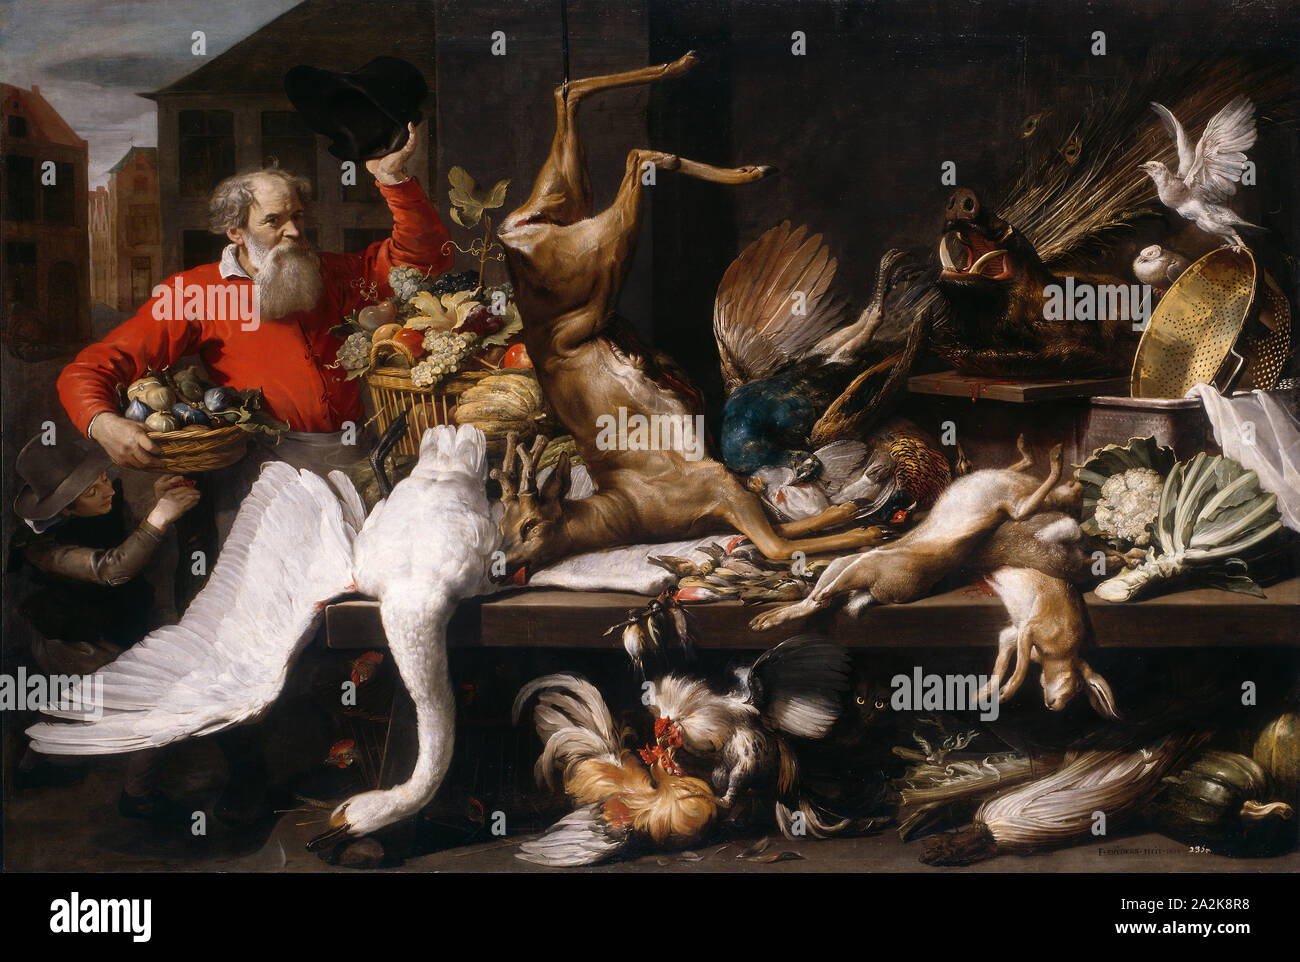 Still Life with Dead Game, des fruits et des légumes dans un marché, 1614, Frans Snyders, flamand, Flandre, 1579-1657, huile sur toile, 212 × 308 cm (83 1/2 x 121 1/4 dans Banque D'Images